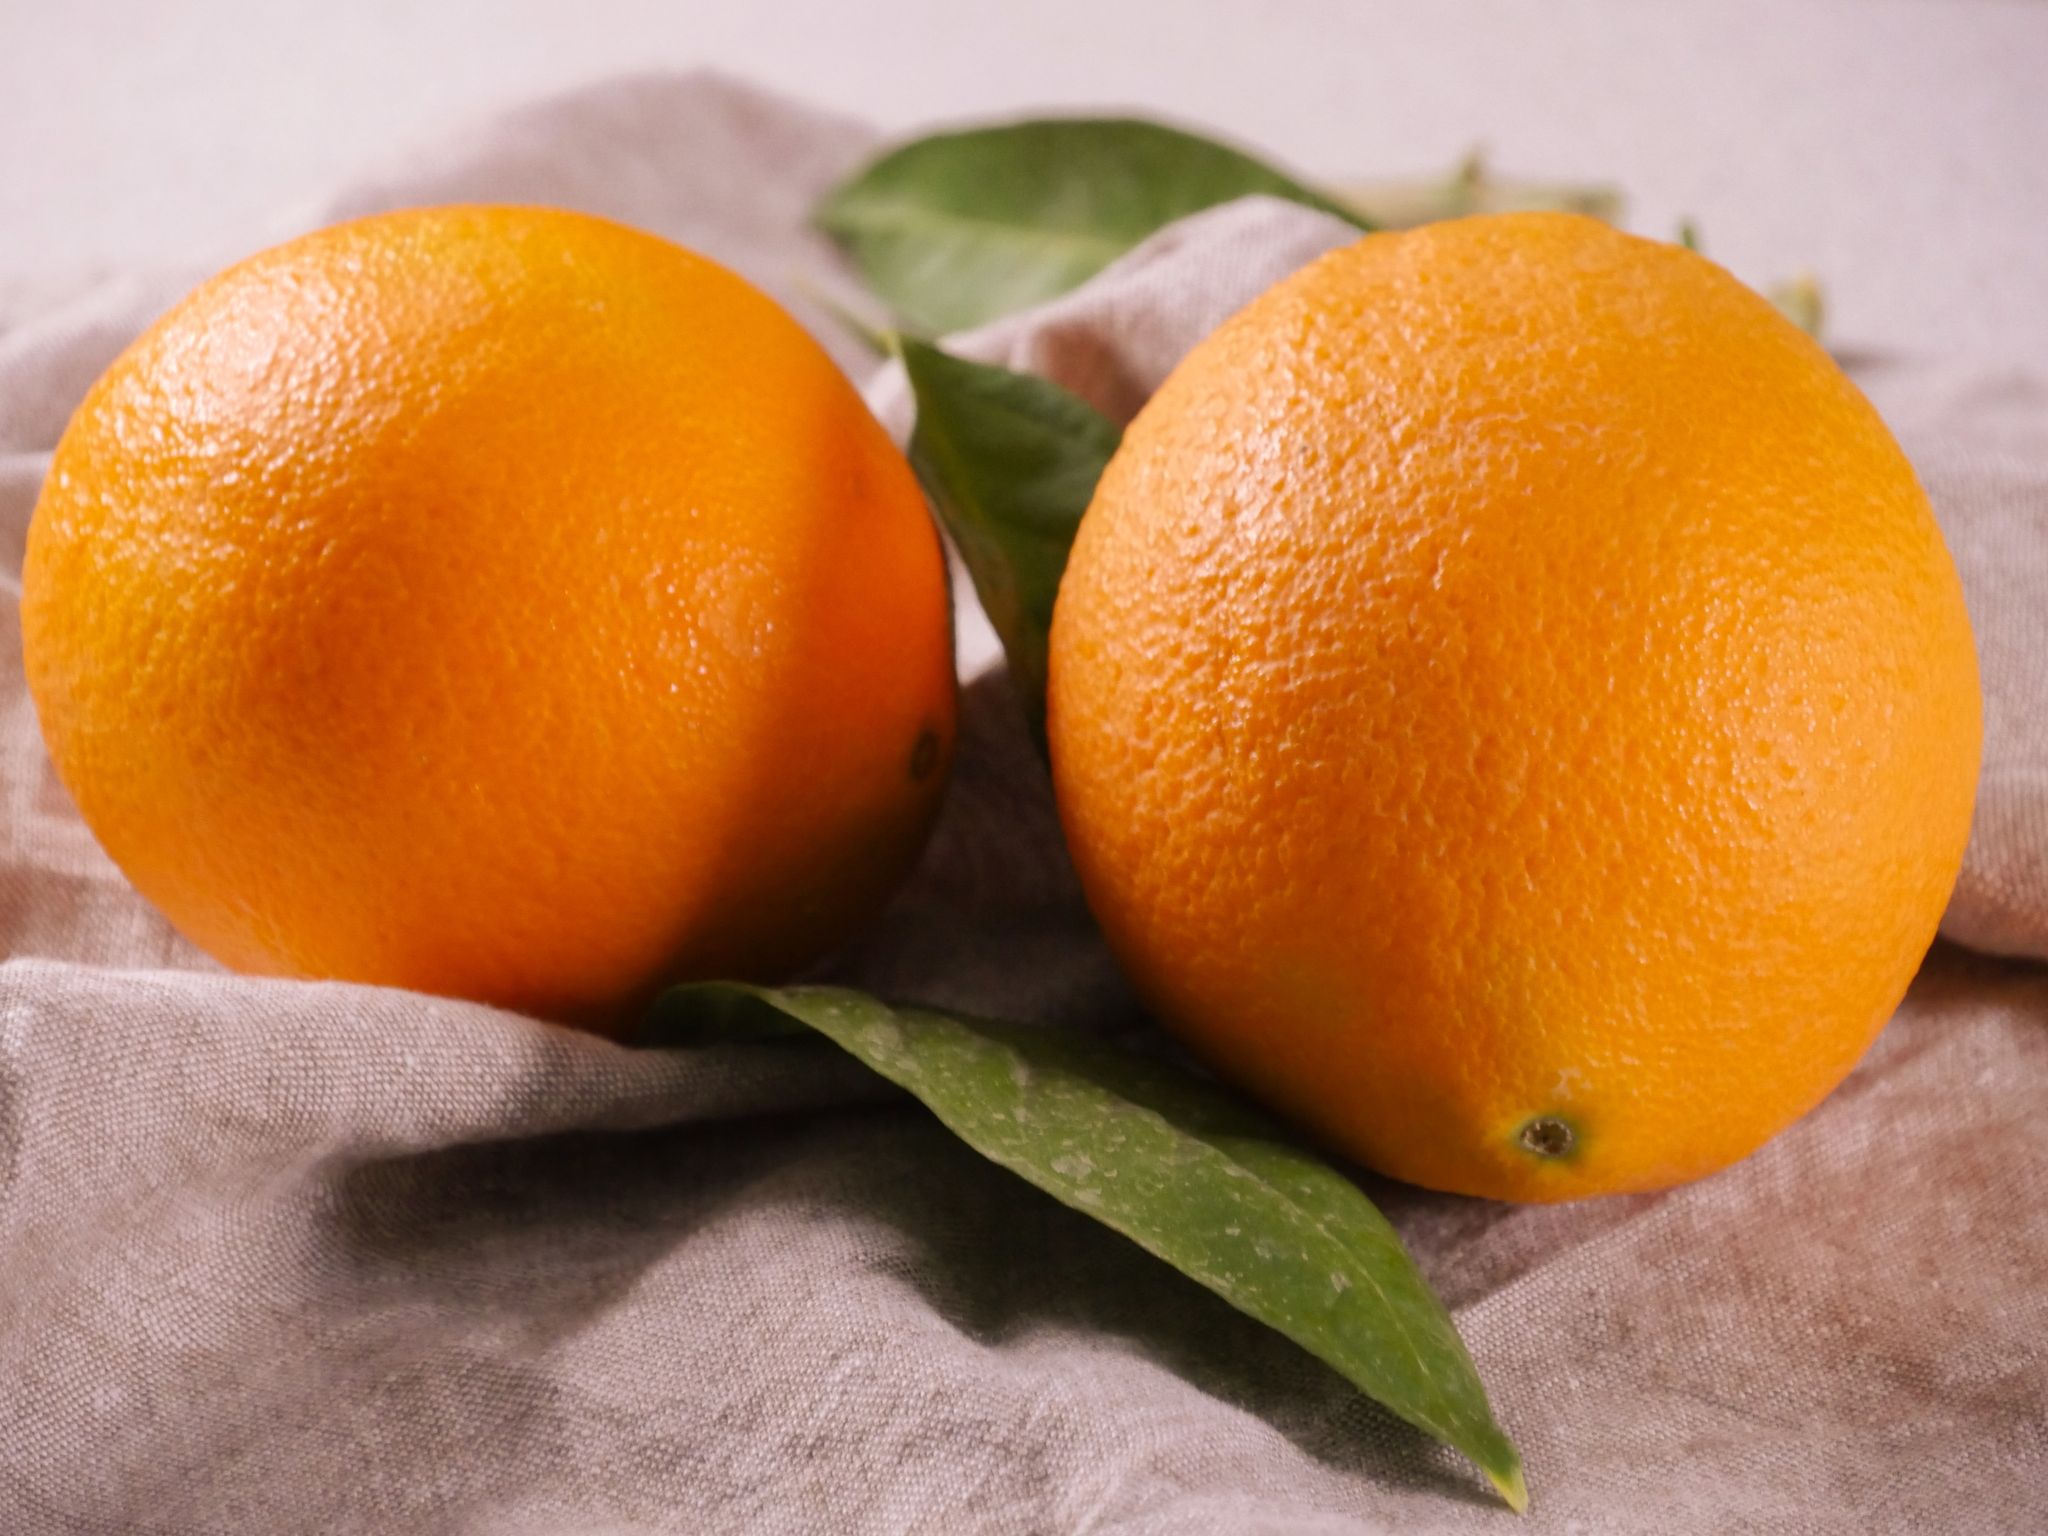 Um Orangen zu filetieren, braucht es ein großes, richtig scharfes Messer.